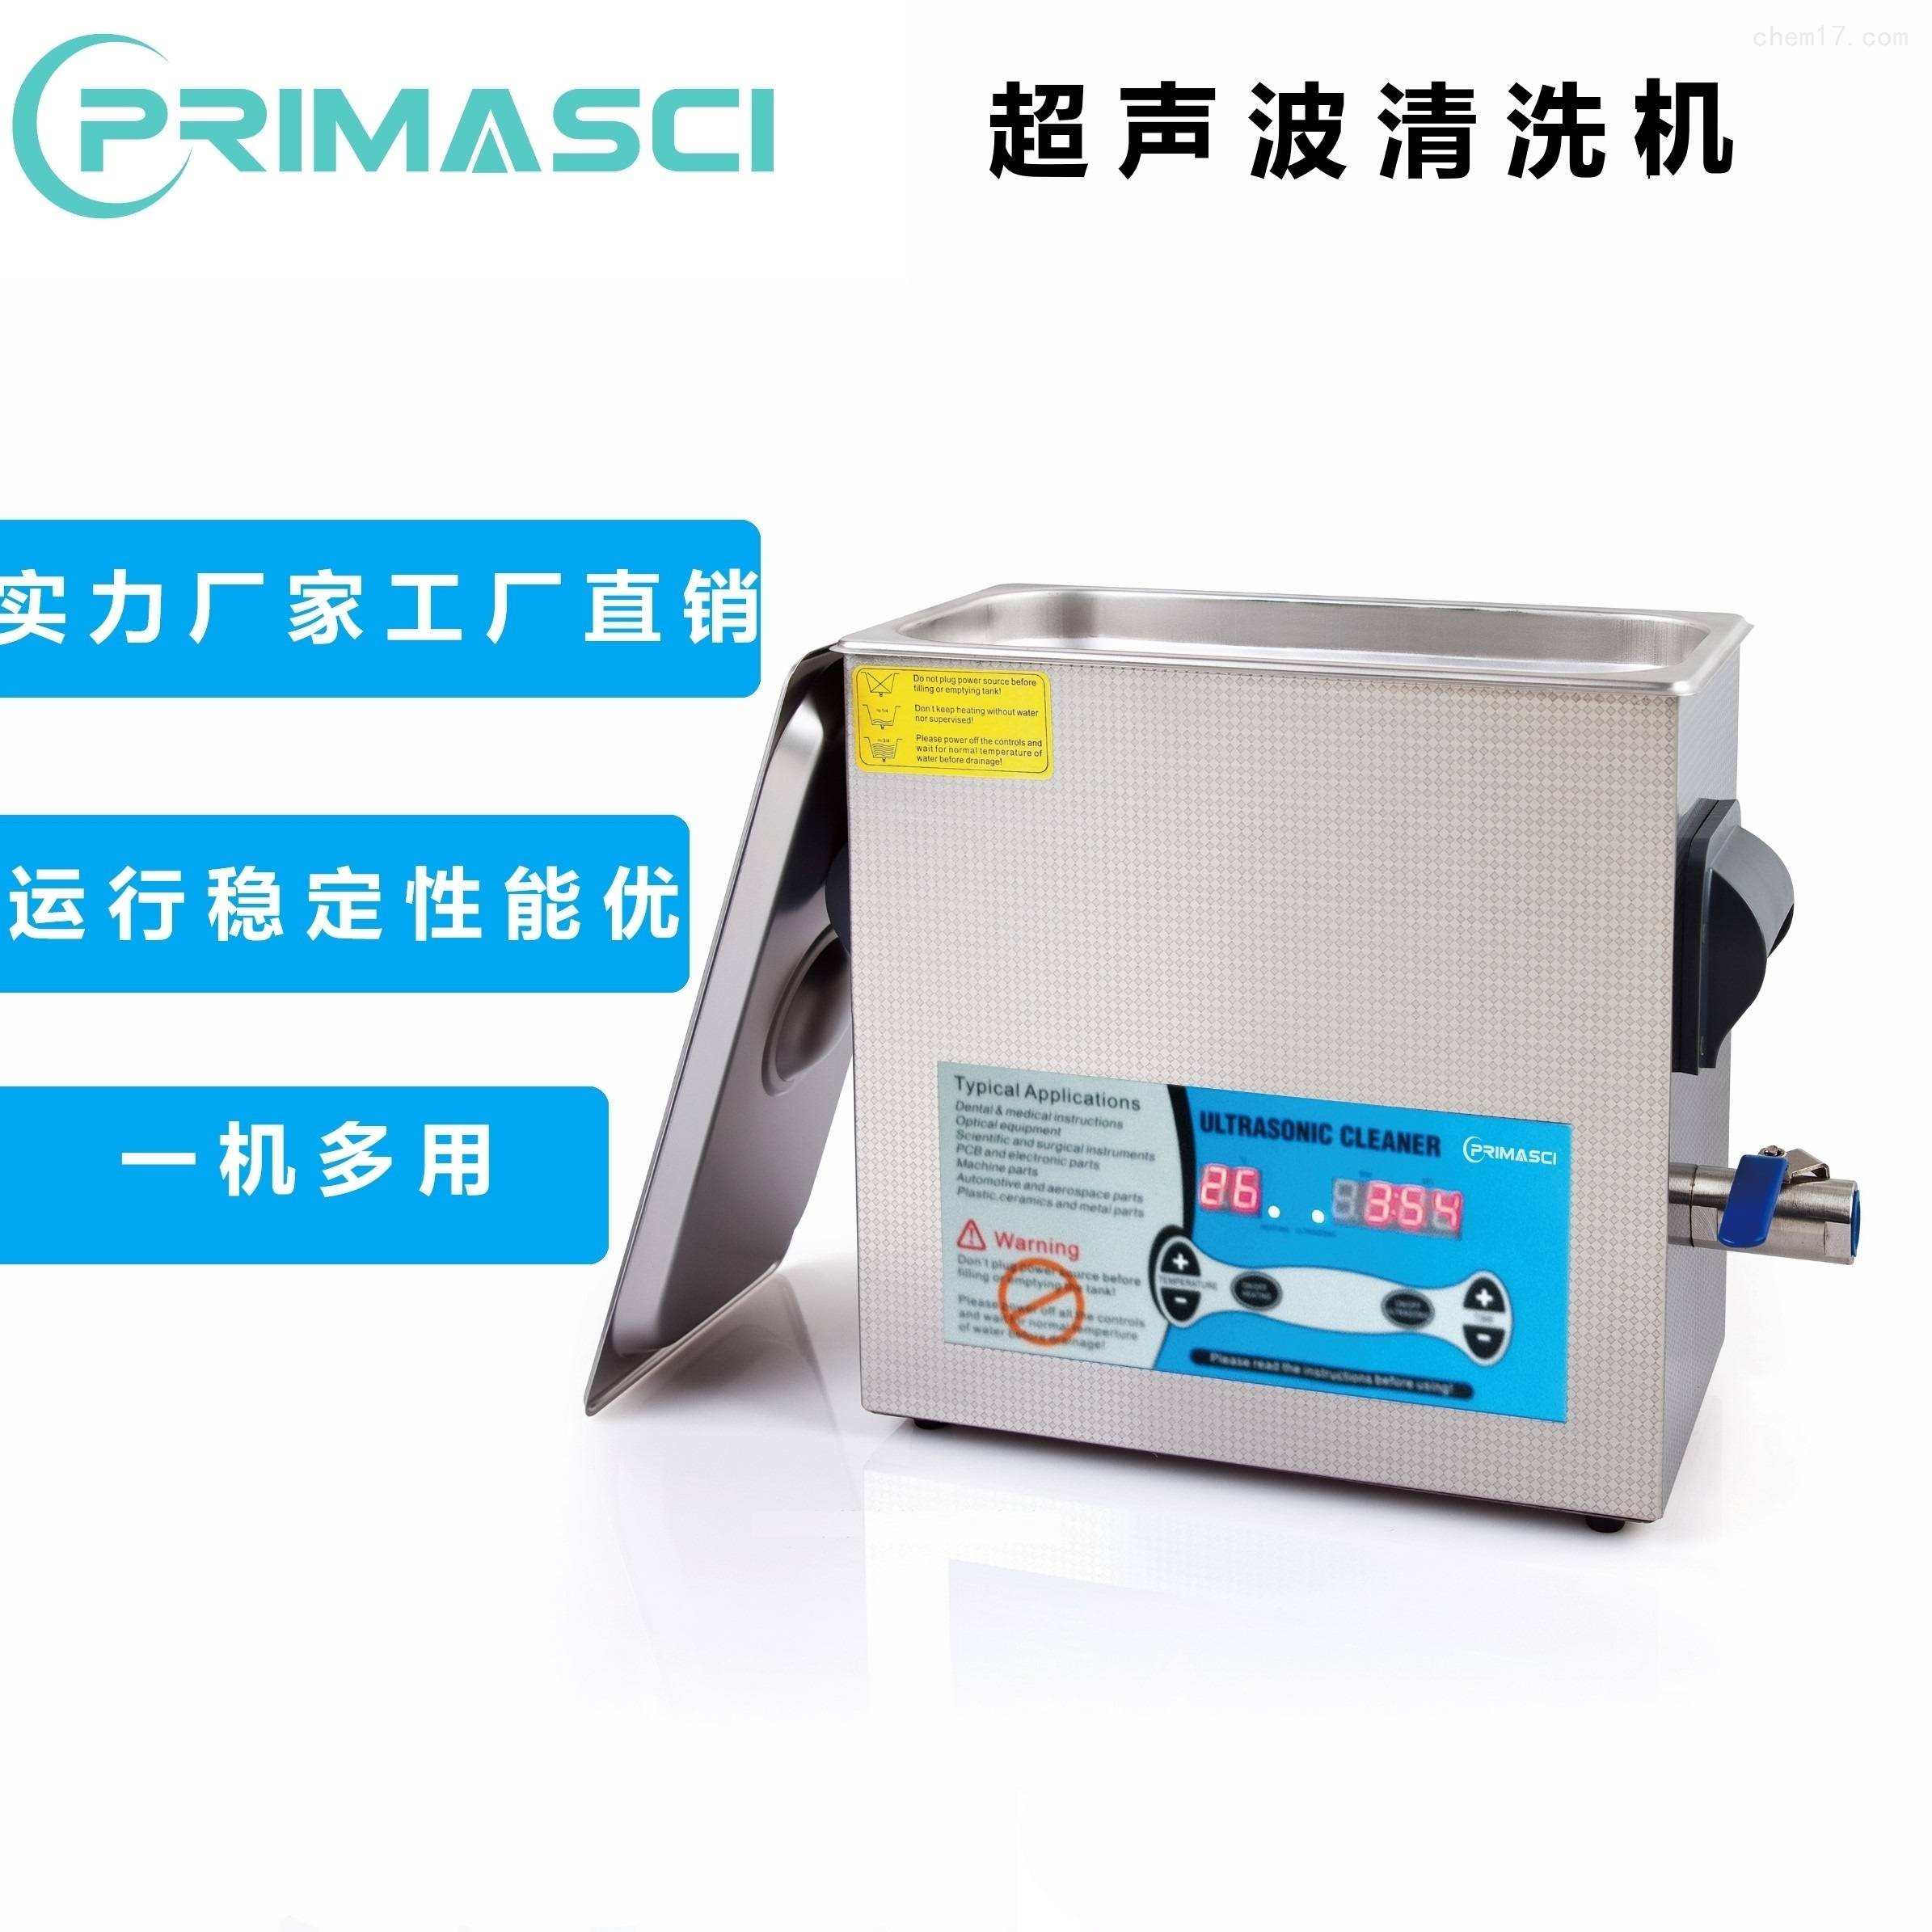 英国PrimaSci通用超声波清洗机PM3-900TL